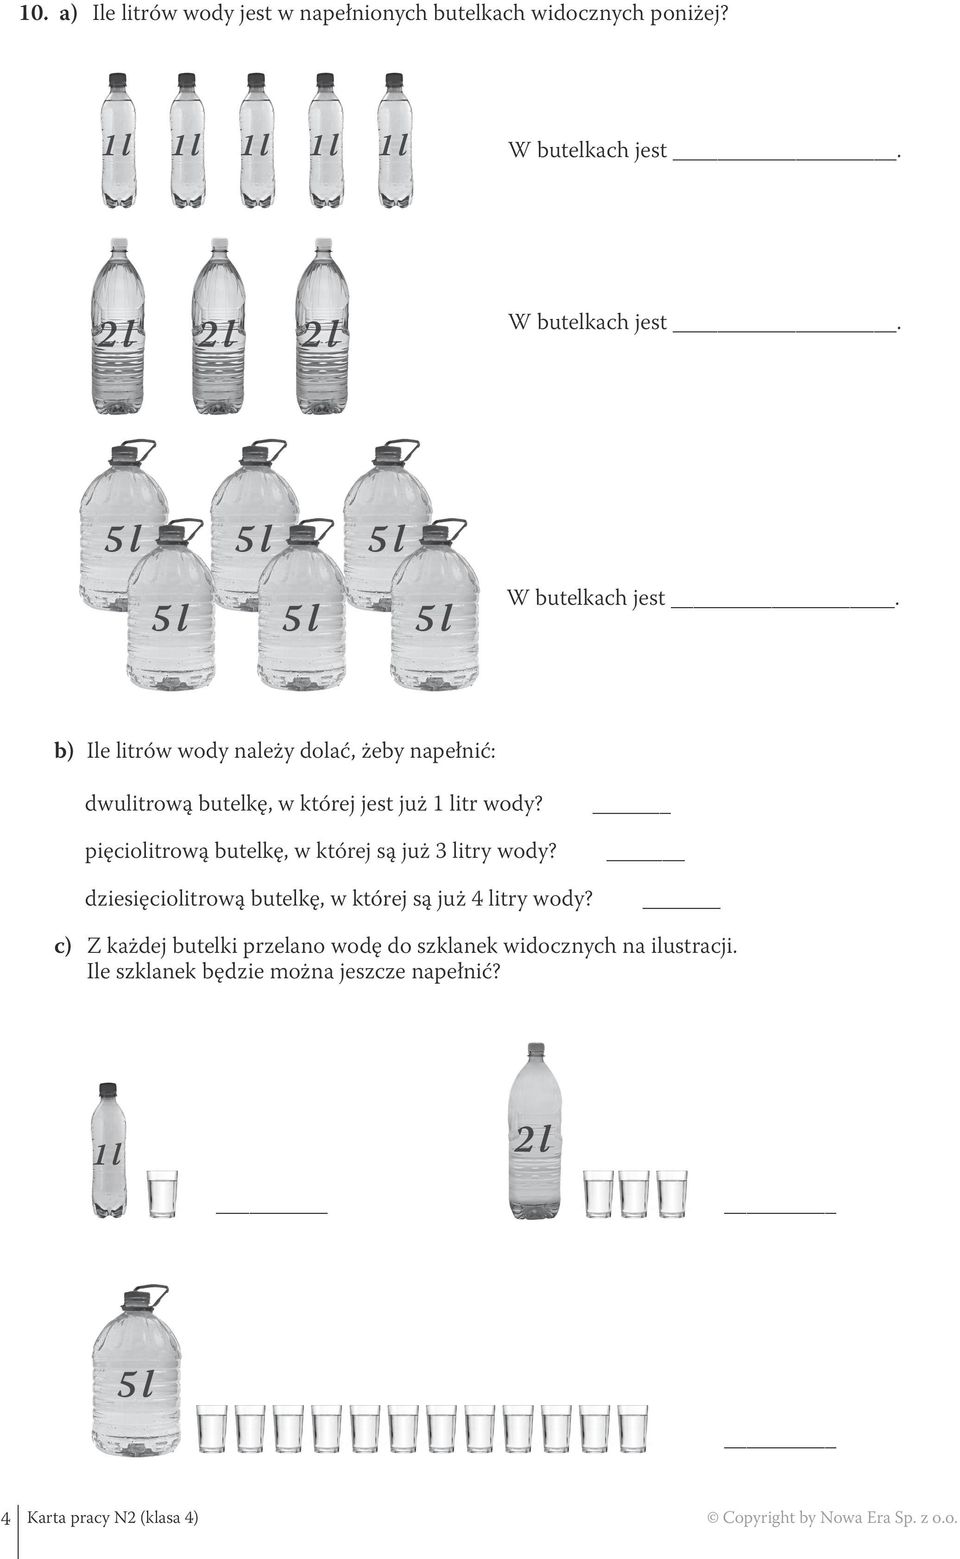 b) Ile litrów wody należy dolać, żeby napełnić: dwulitrową butelkę, w której jest już 1 litr wody?